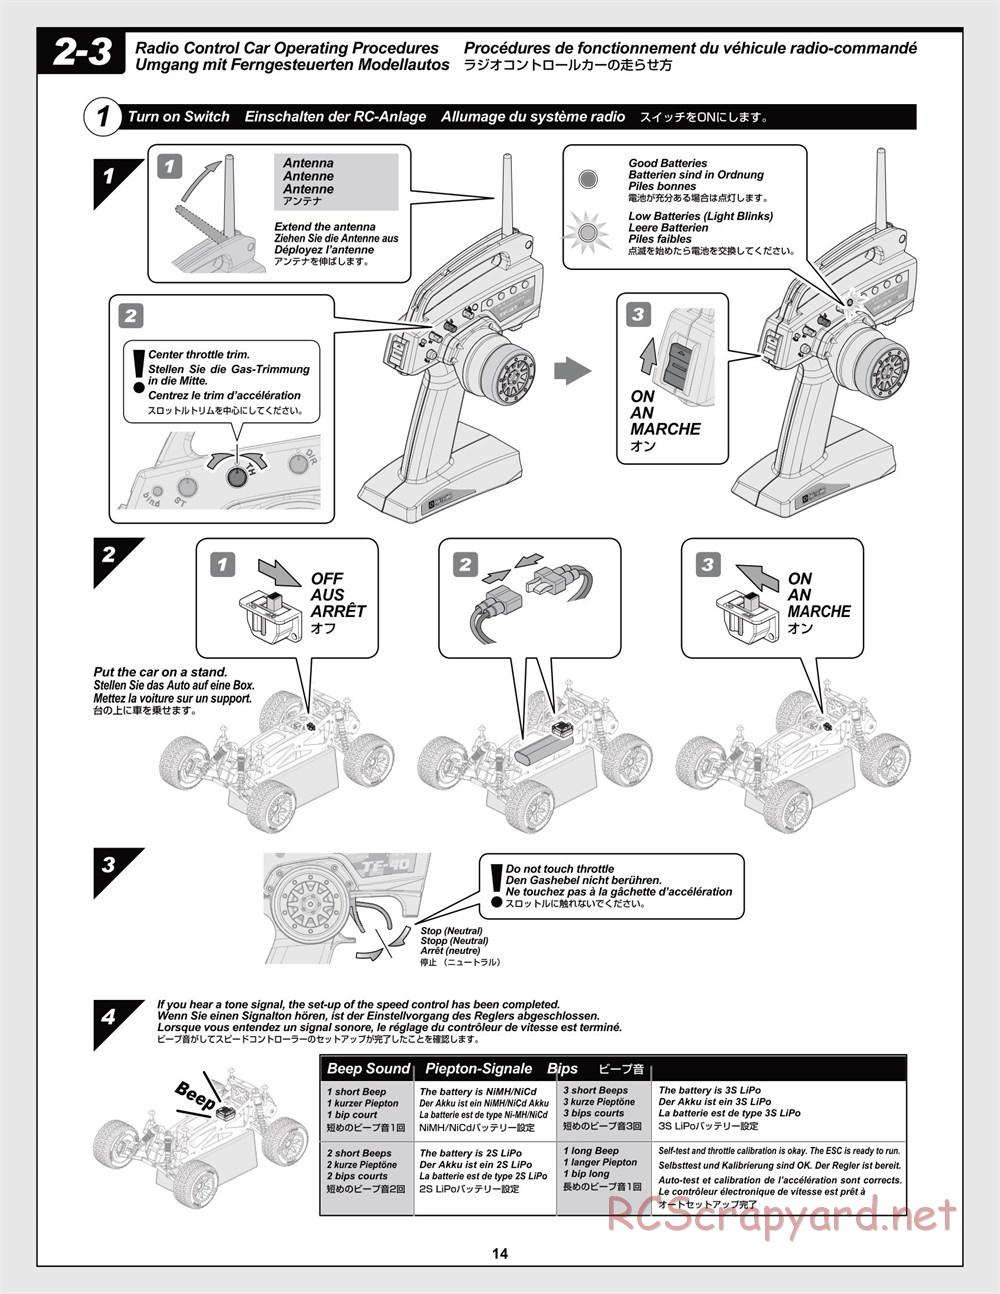 HPI - Jumpshot MT V2 - Manual - Page 14